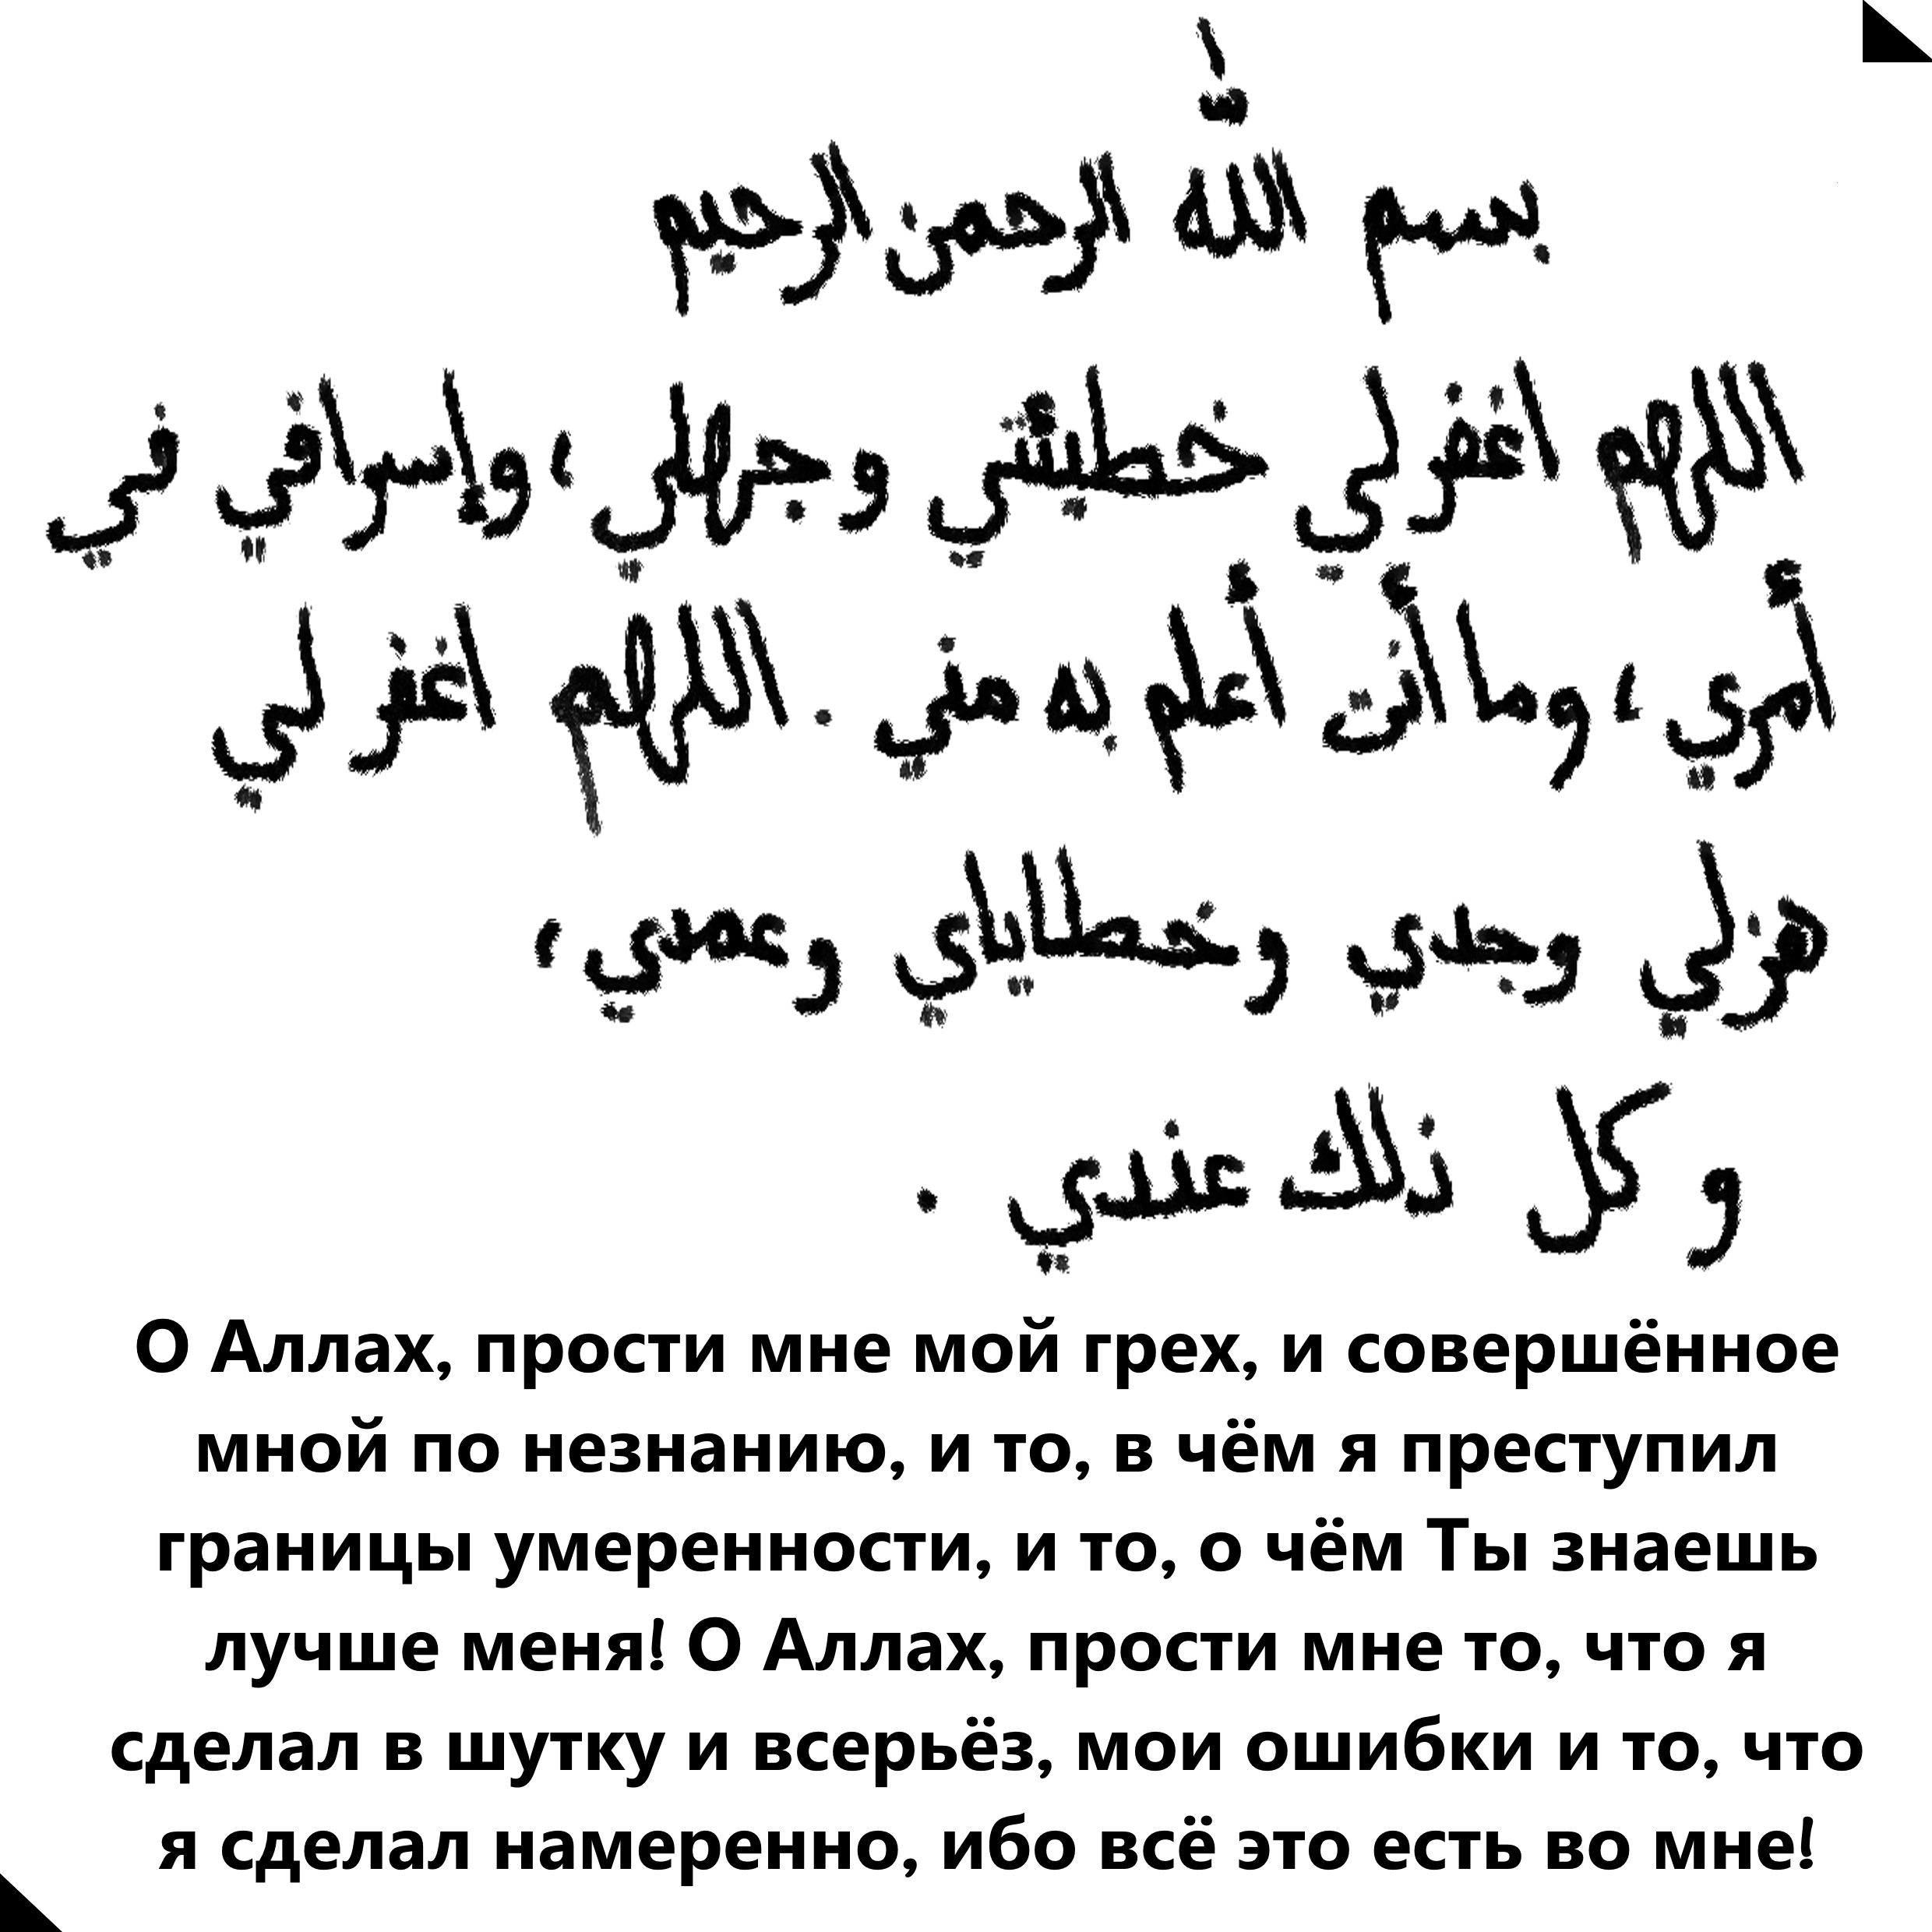 Молитва арабская читает. Молитва на арабском языке. Мусульманские молитвы на арабском языке. Масульманские малитвы на руском.